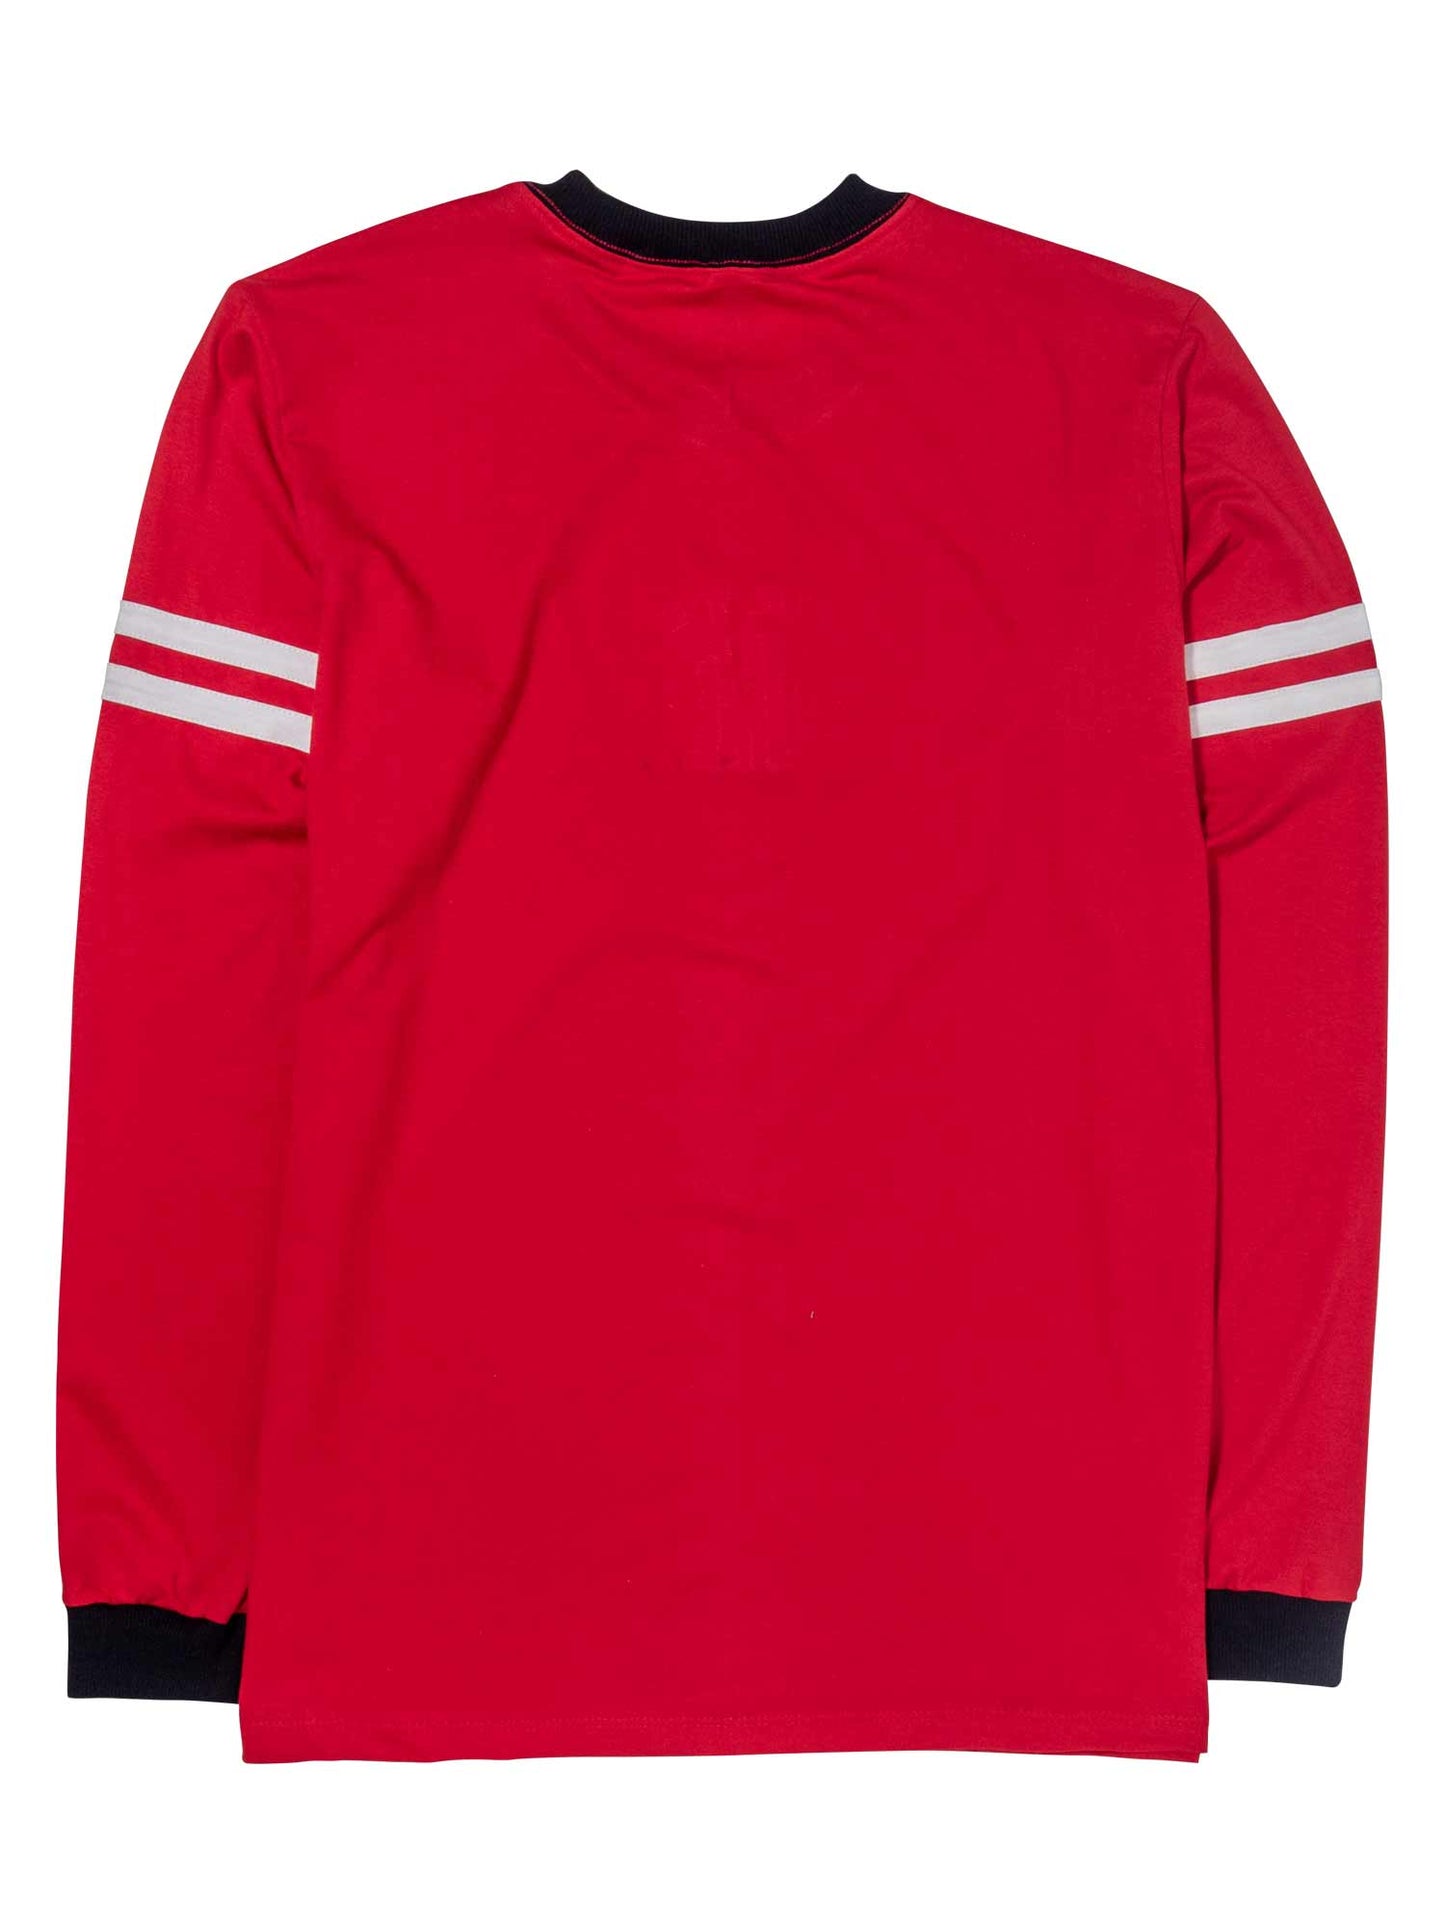     Camiseta-Future-City-Players-Vermelha-Costas